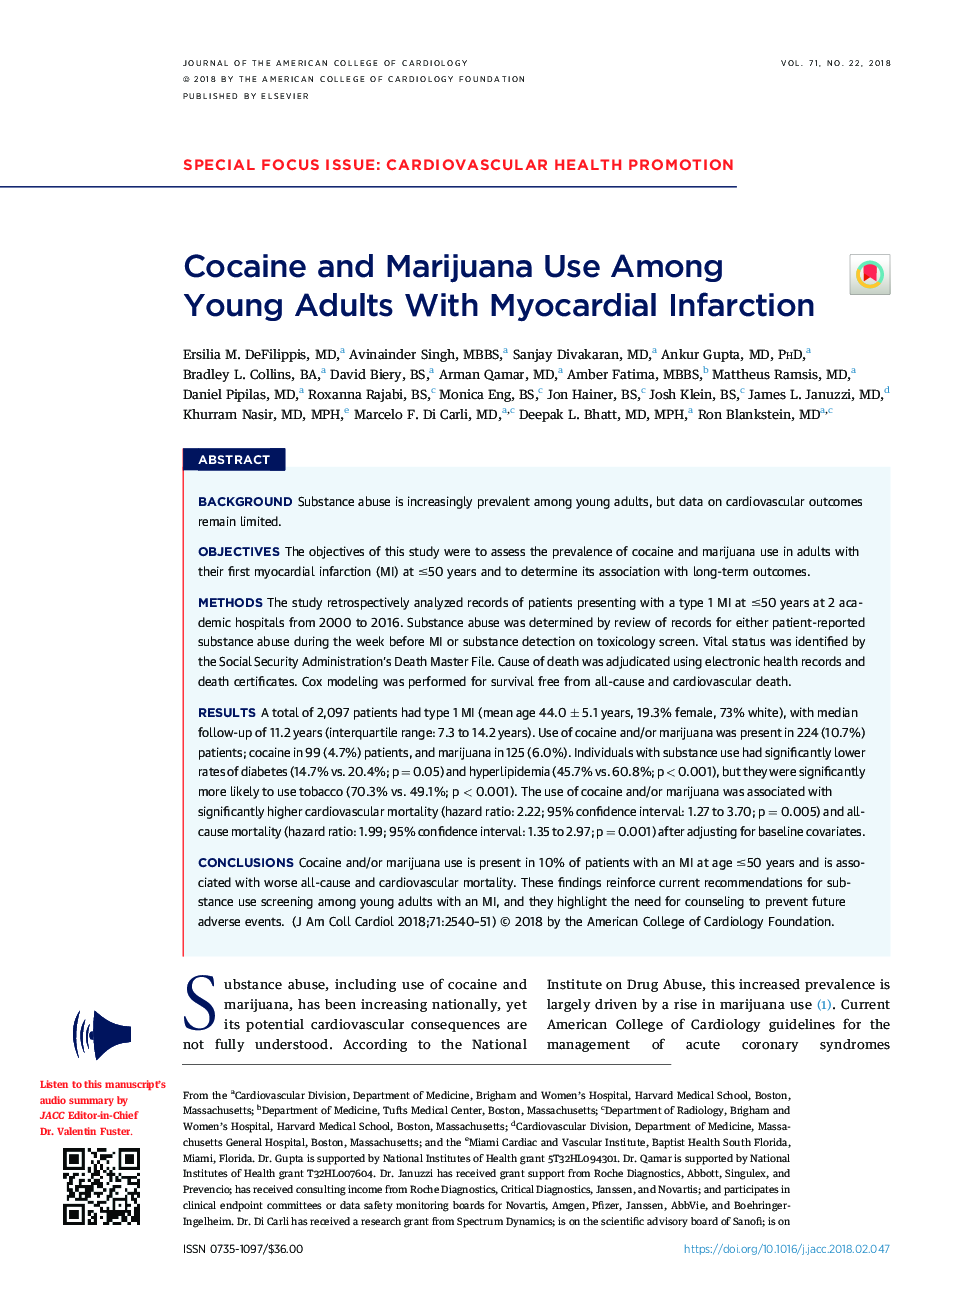 کوکائین و ماری جوانا در میان بزرگسالان جوان مبتلا به انفارکتوس میوکارد استفاده می شود 